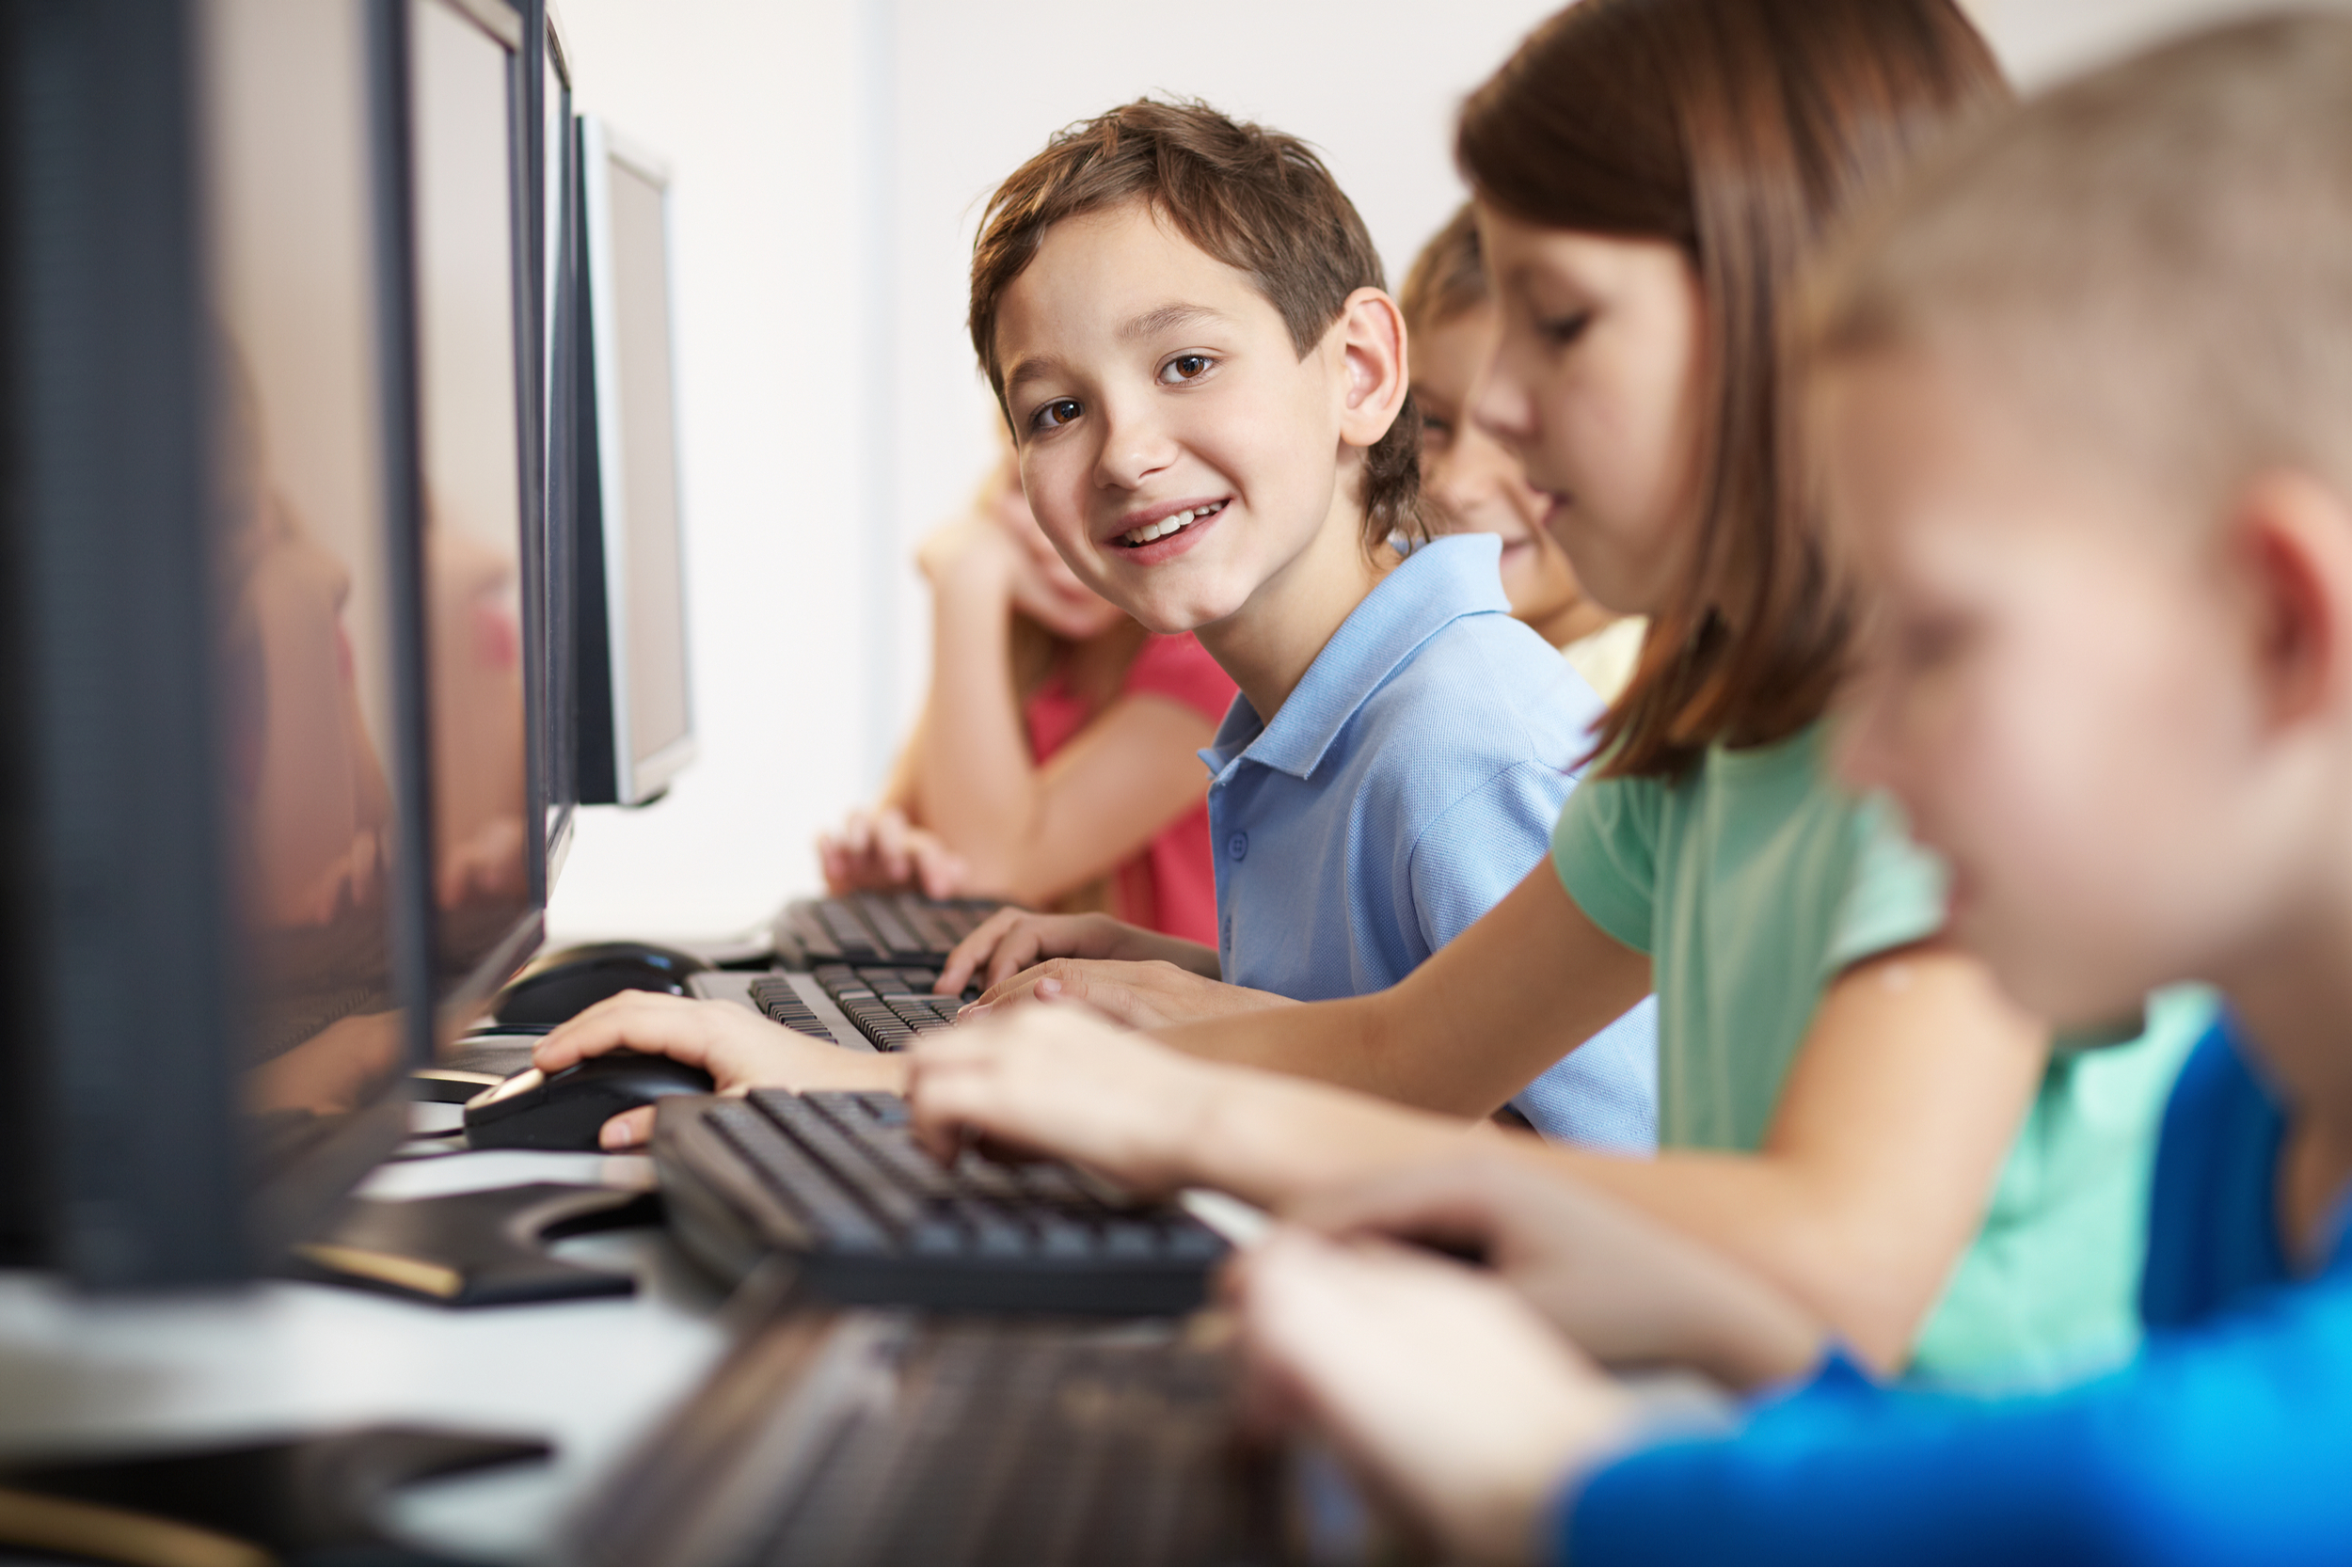 nauka zdalna, dzieci przy komputerze fot. Shutterstock